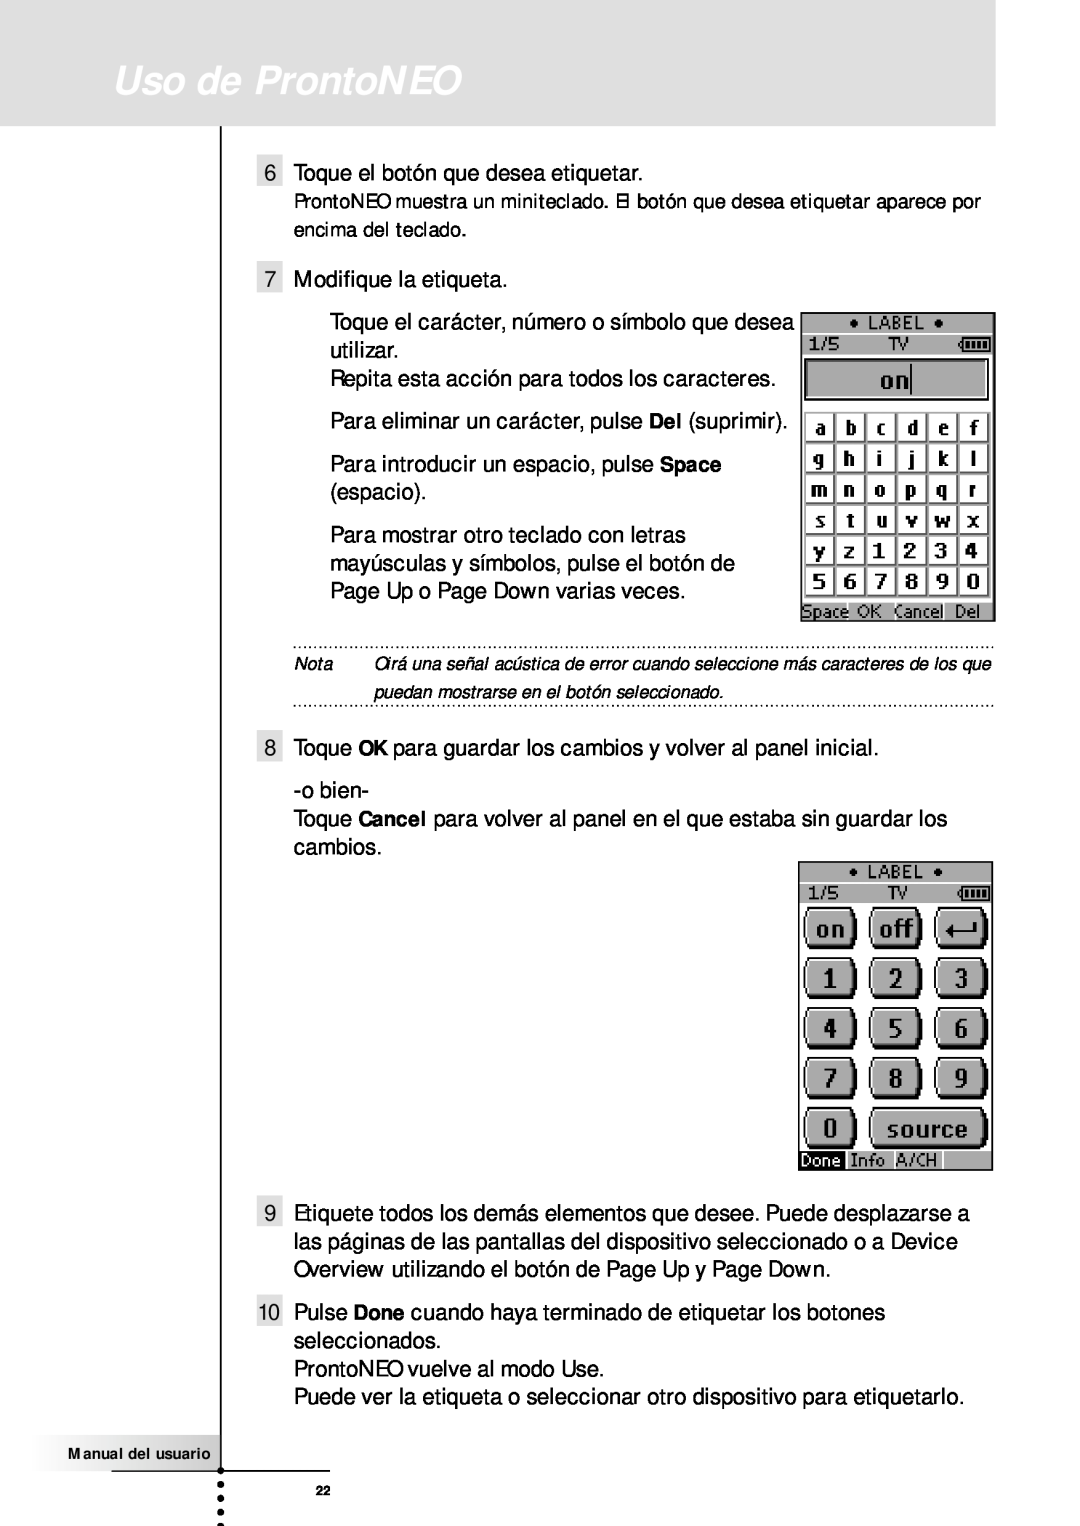 Philips SBC RU930 manual Uso de ProntoNEO, Toque el botón que desea etiquetar 